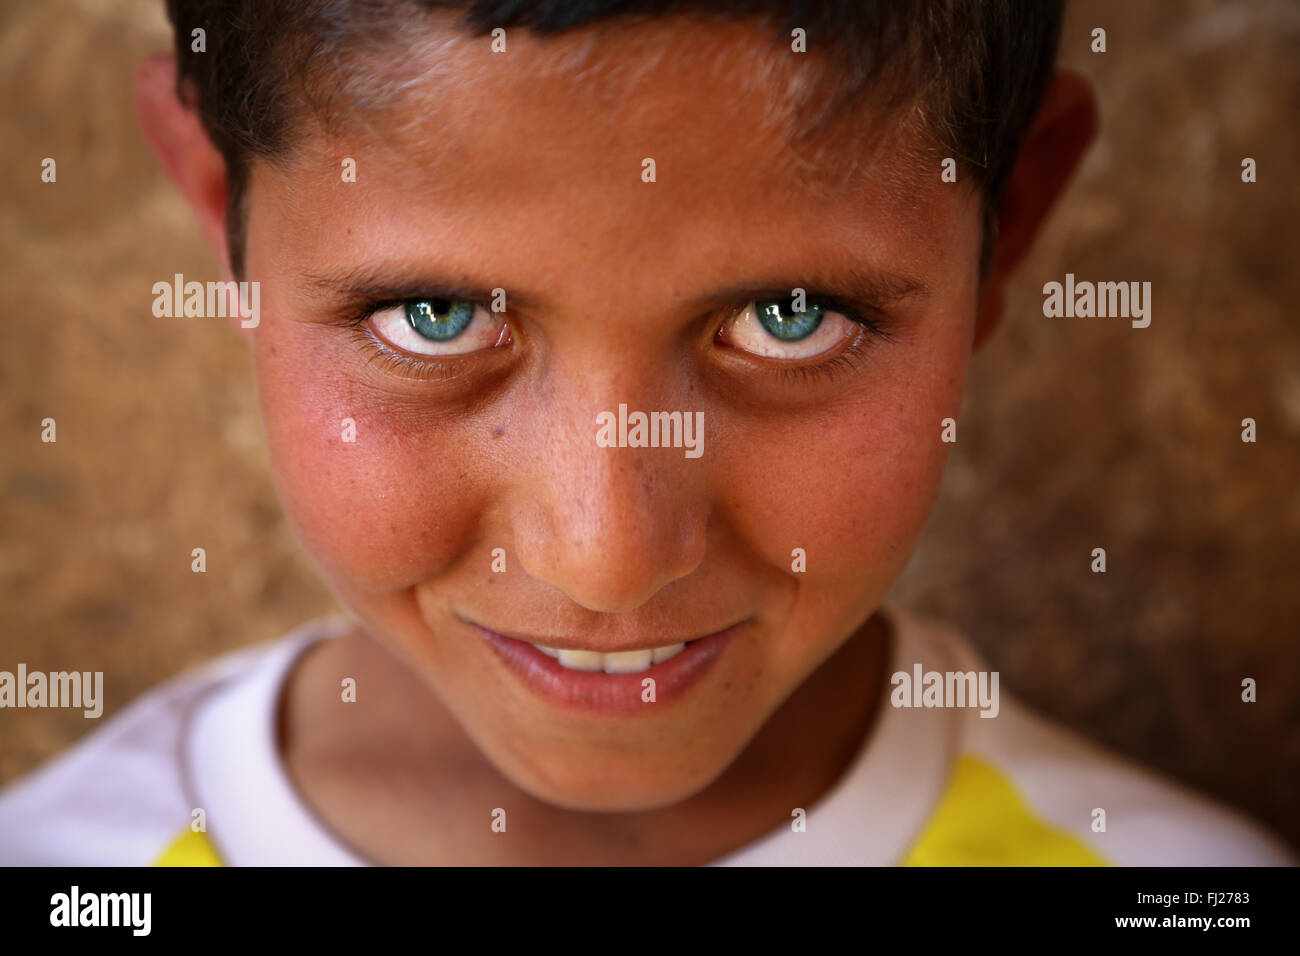 Imagen de un niño kurdo con ojos azules en Dogubayazit, Turquía oriental Foto de stock